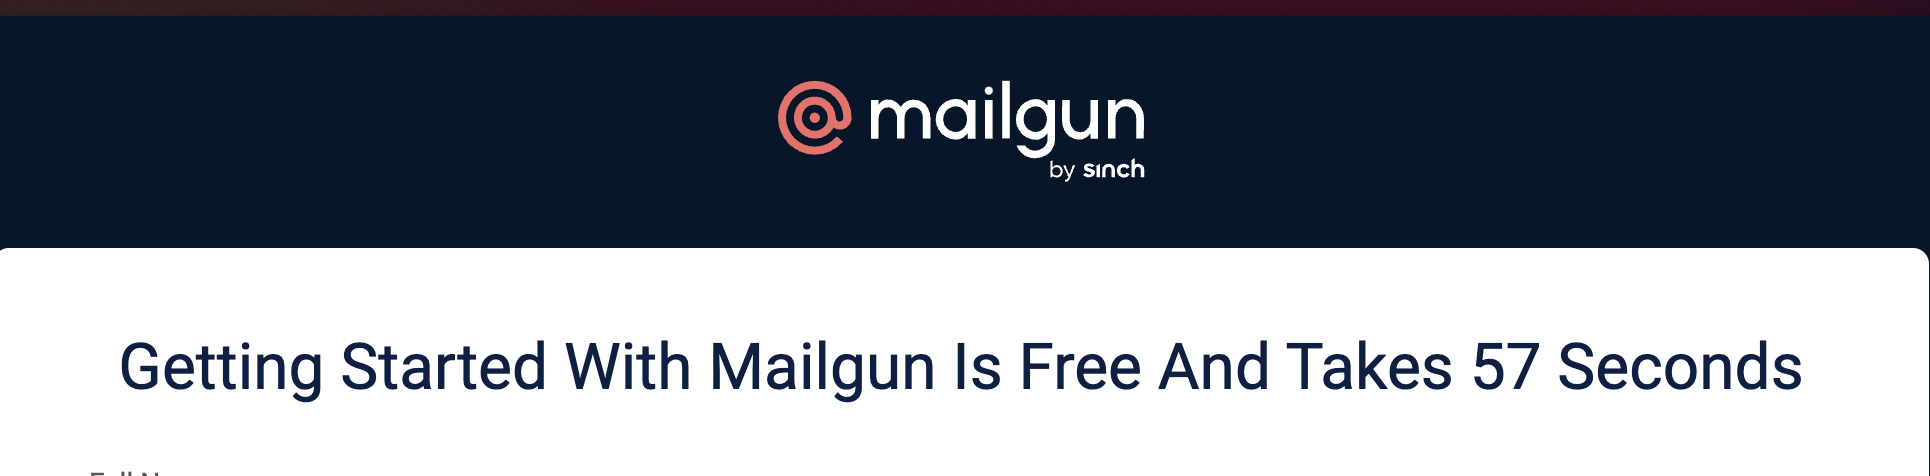 Mailgun get started in 57 seconds